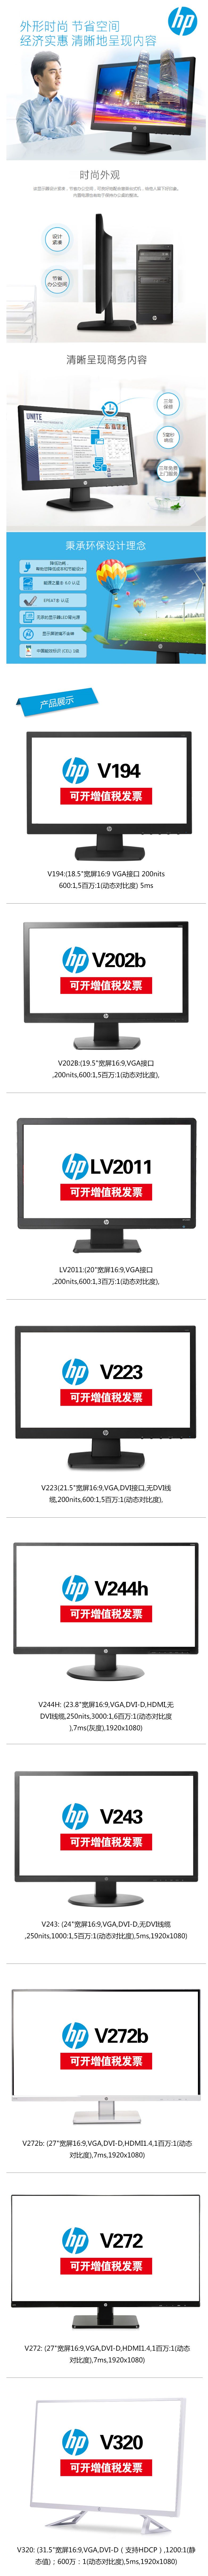 V202b 1.jpg